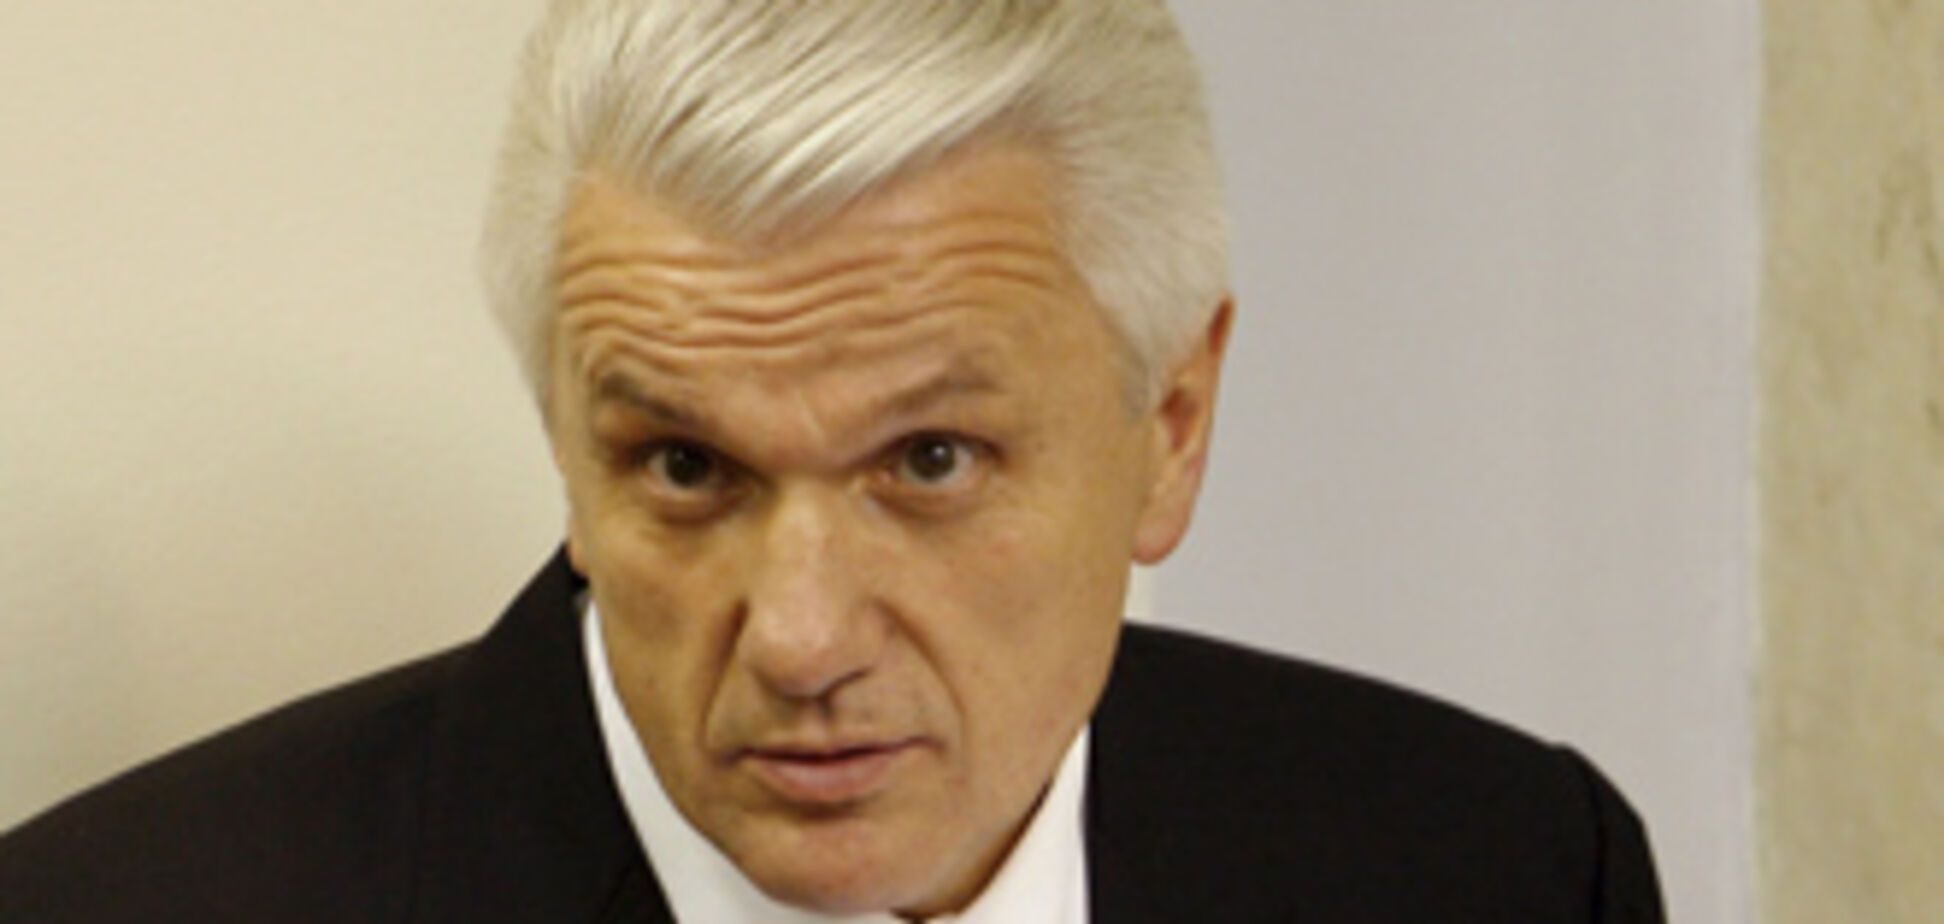 Литвин угрожает судом депутатам-совместителям